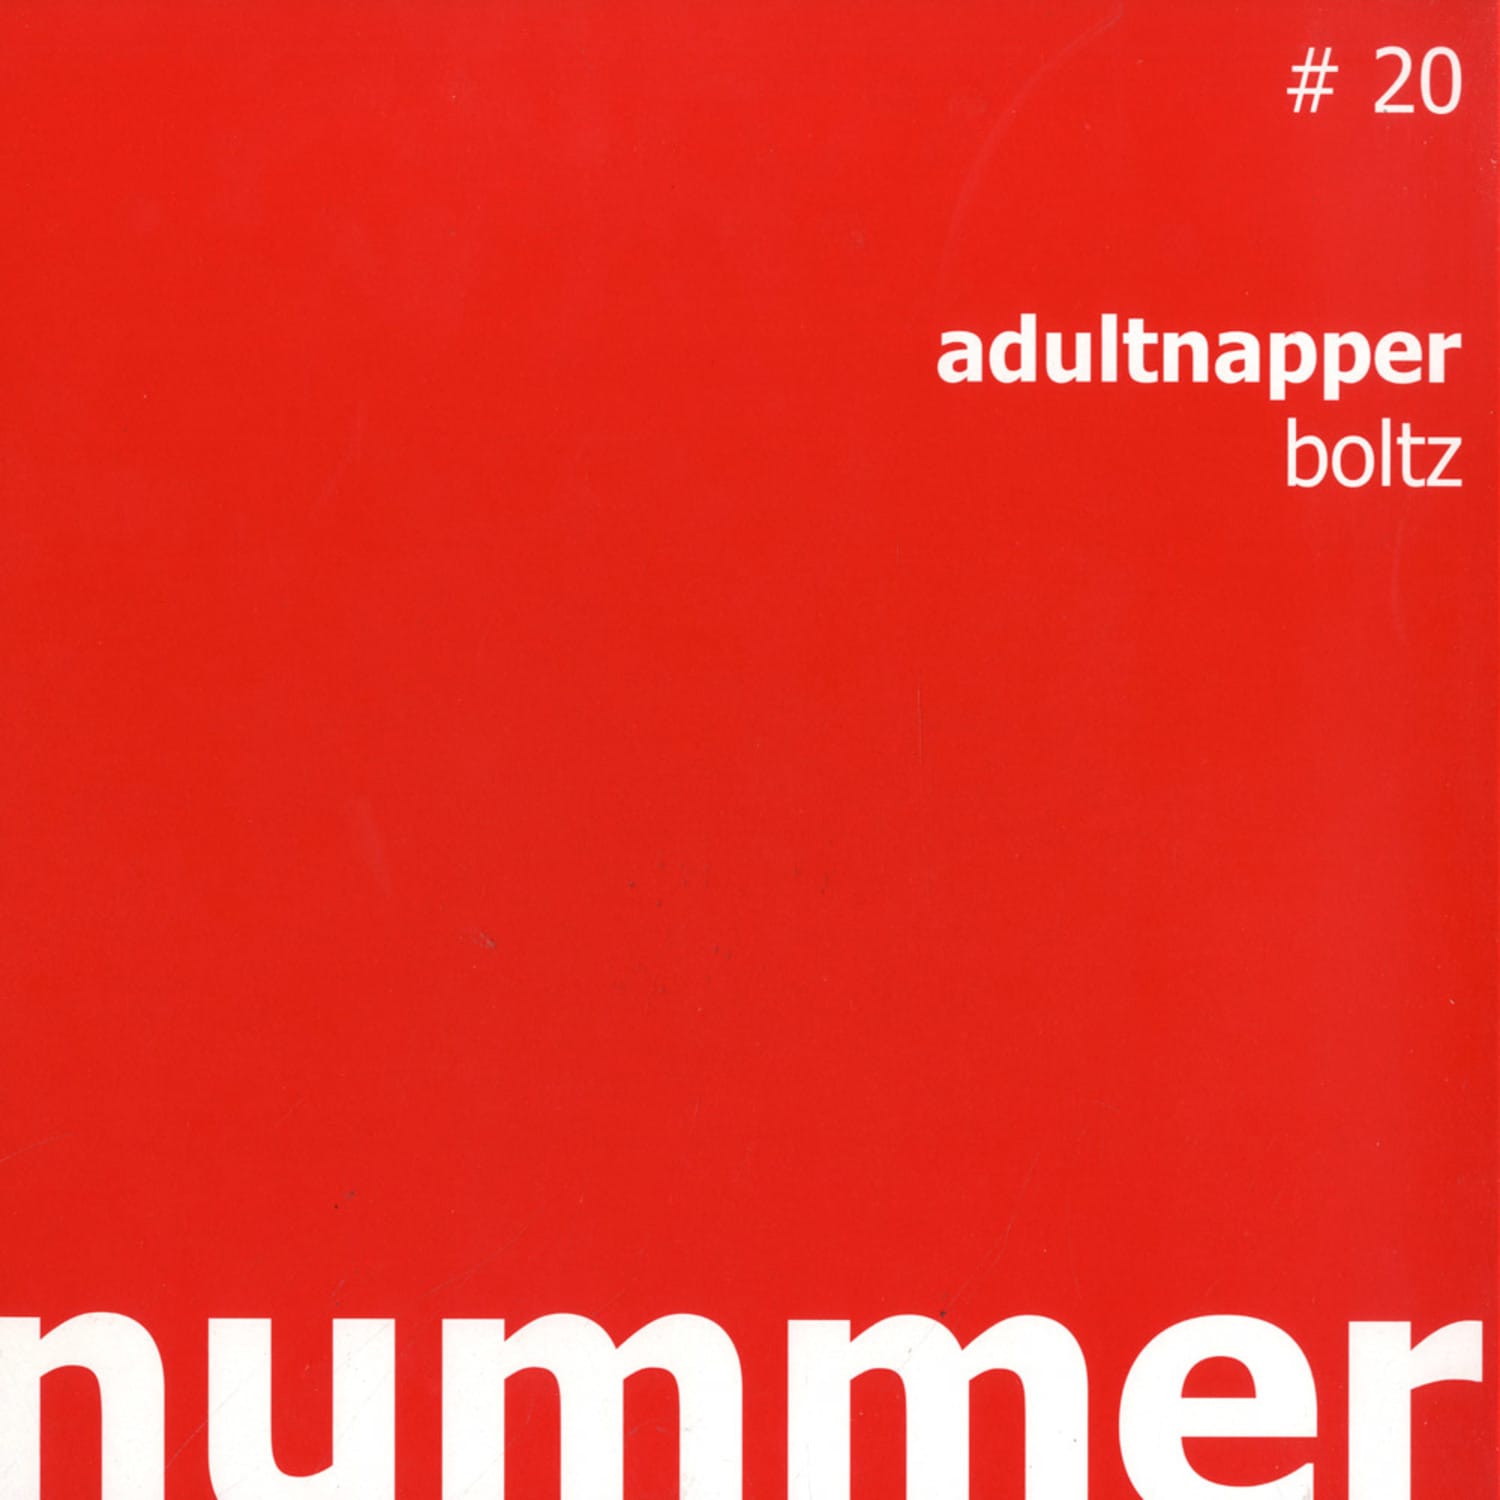 Adultnapper - BOLTZ